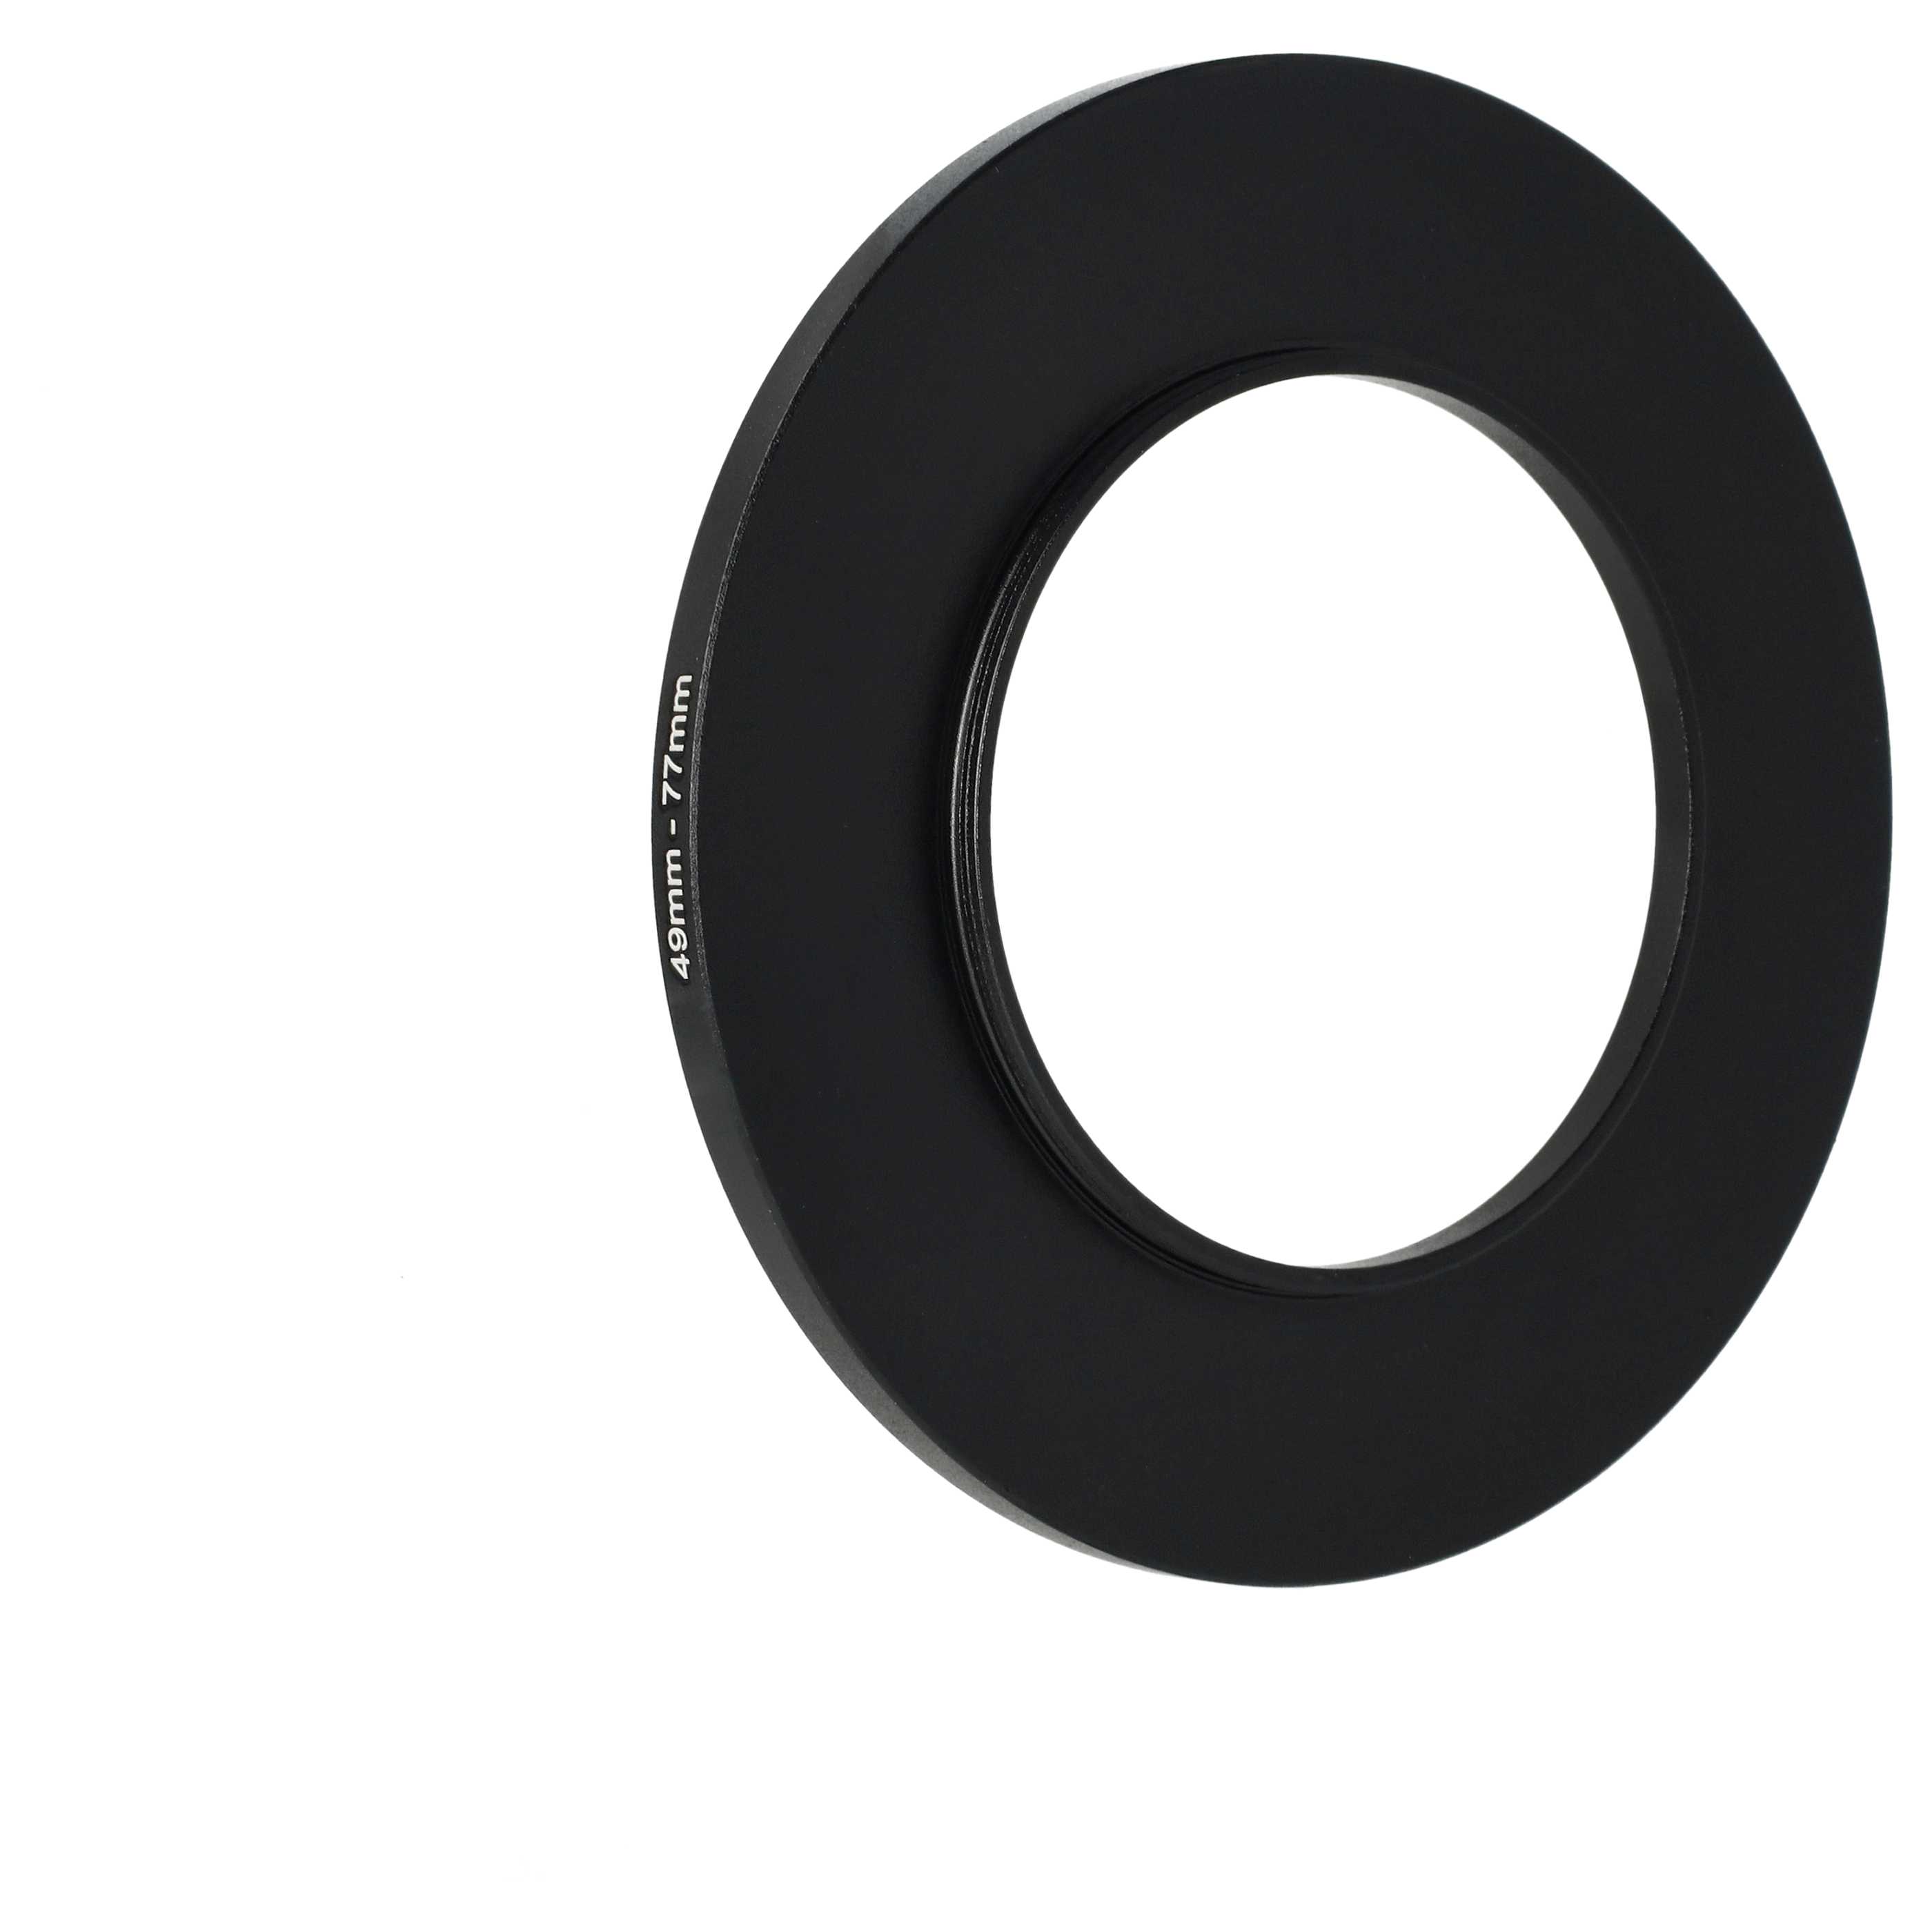 Step-Up-Ring Adapter 49 mm auf 77 mm passend für diverse Kamera-Objektive - Filteradapter